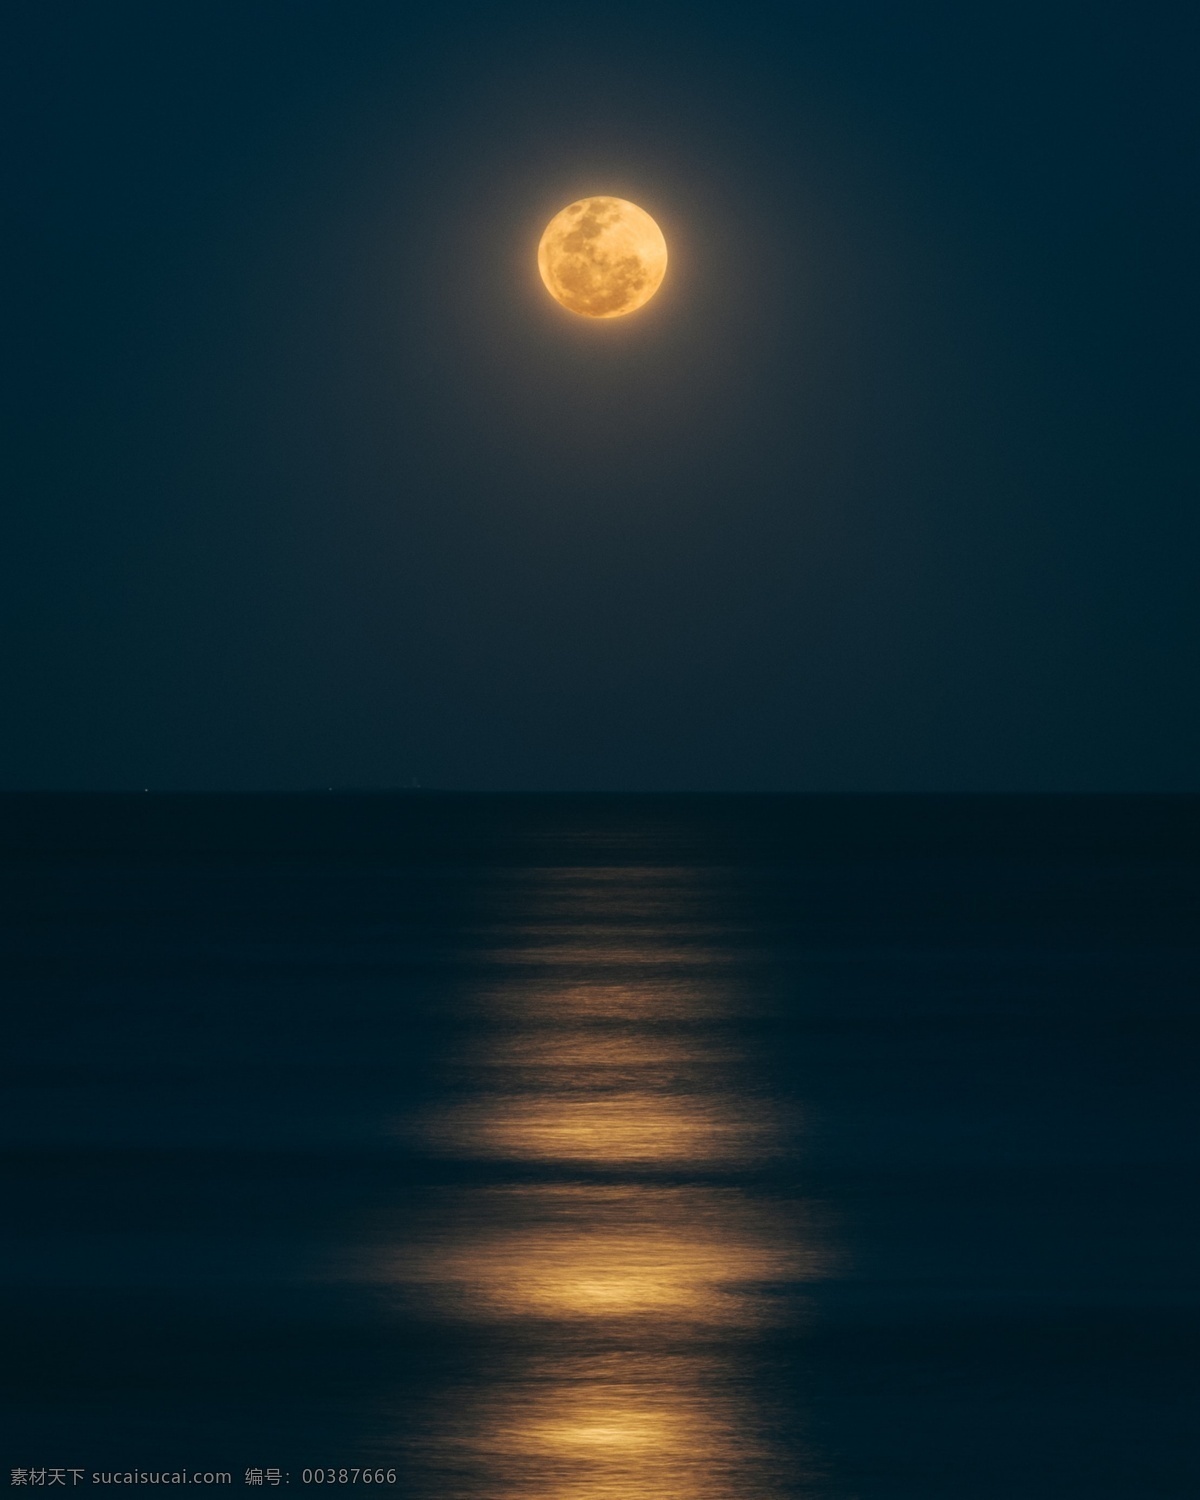 海水月亮图片 月亮 海水 湖水 月光 海上生明月 月球 中秋 金色 自然景观 自然风景